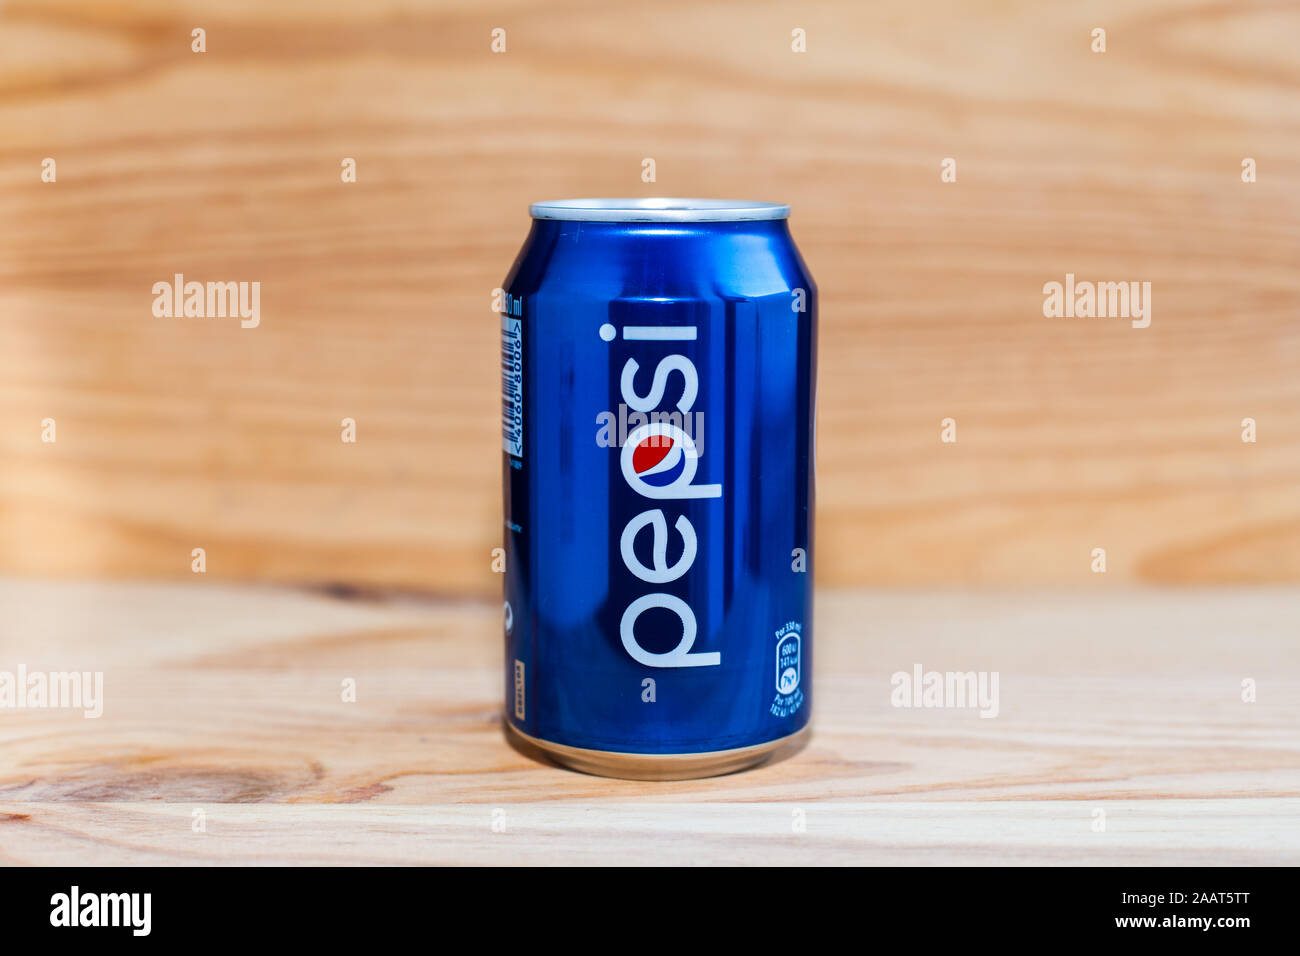 MANISES, VALENCIA, Spagna - 27 gennaio 2019: Può della Pepsi su legno Foto Stock